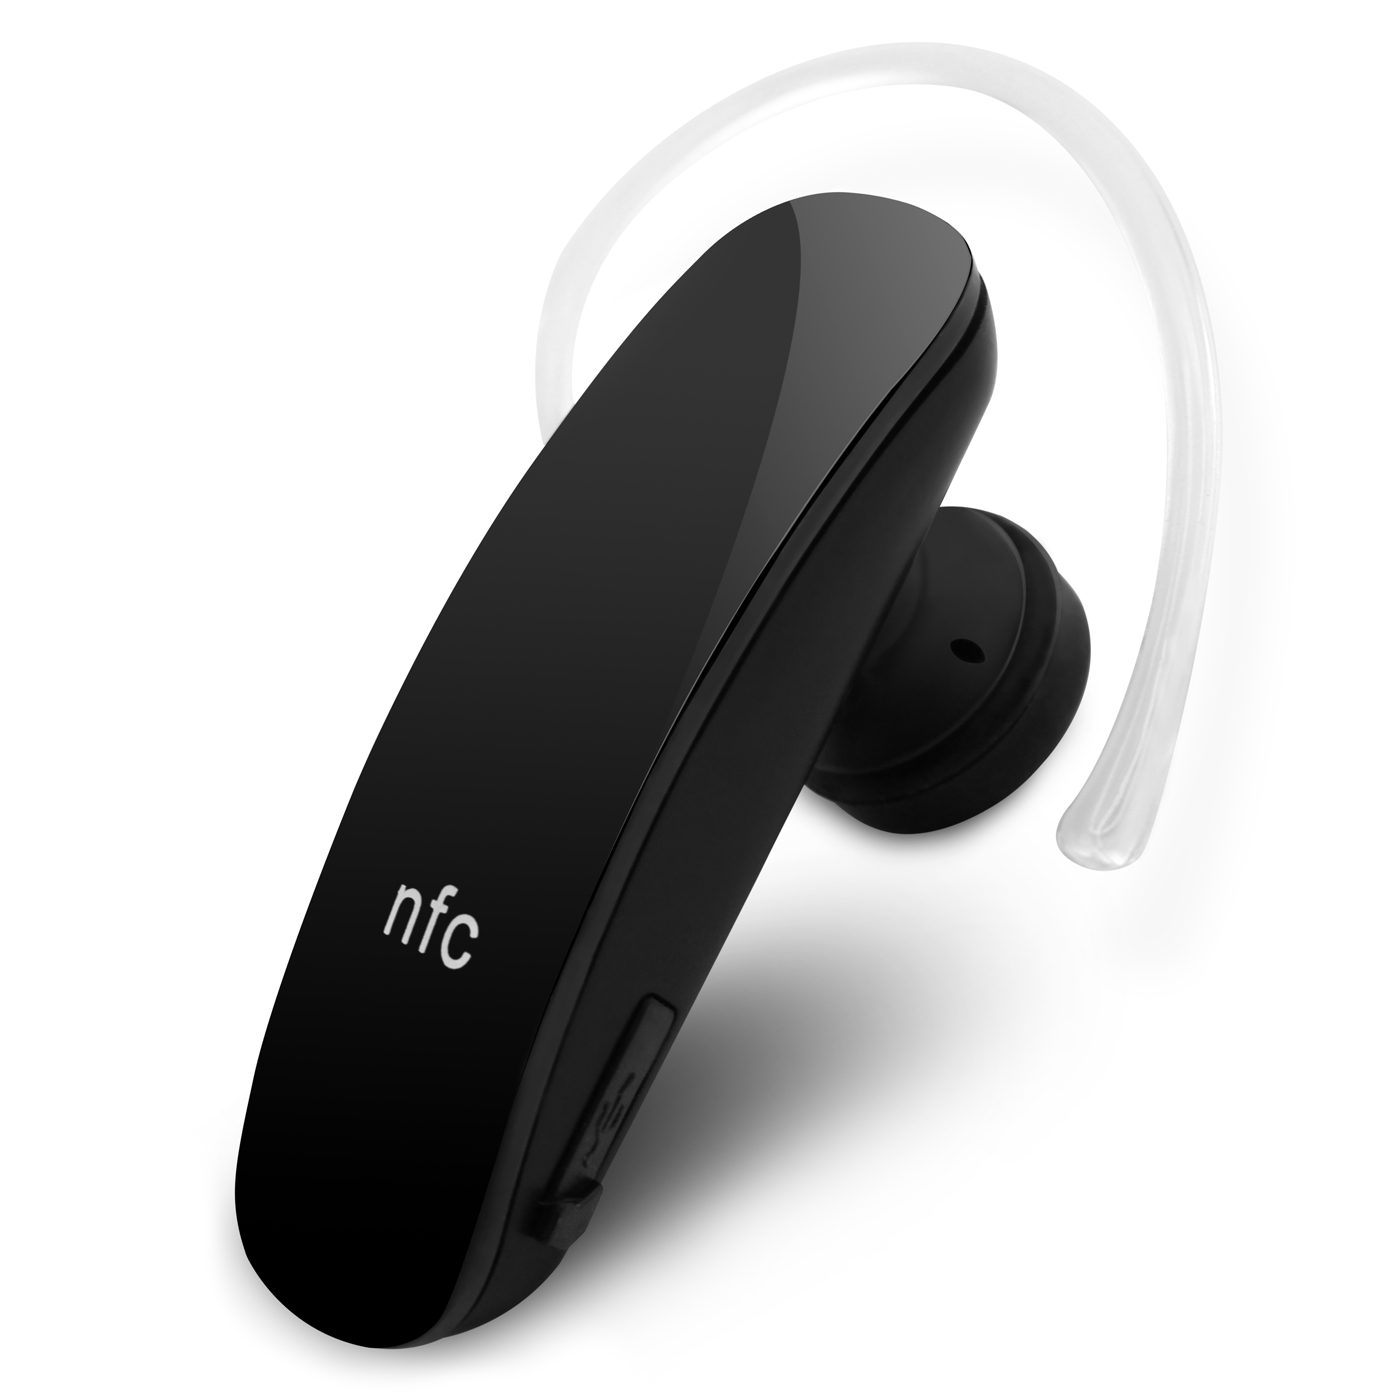 NFC Schwarz Bluetooth 4.0 Headset Kopfhörer Für Nokia N8 Lumia 920 925 1320 635